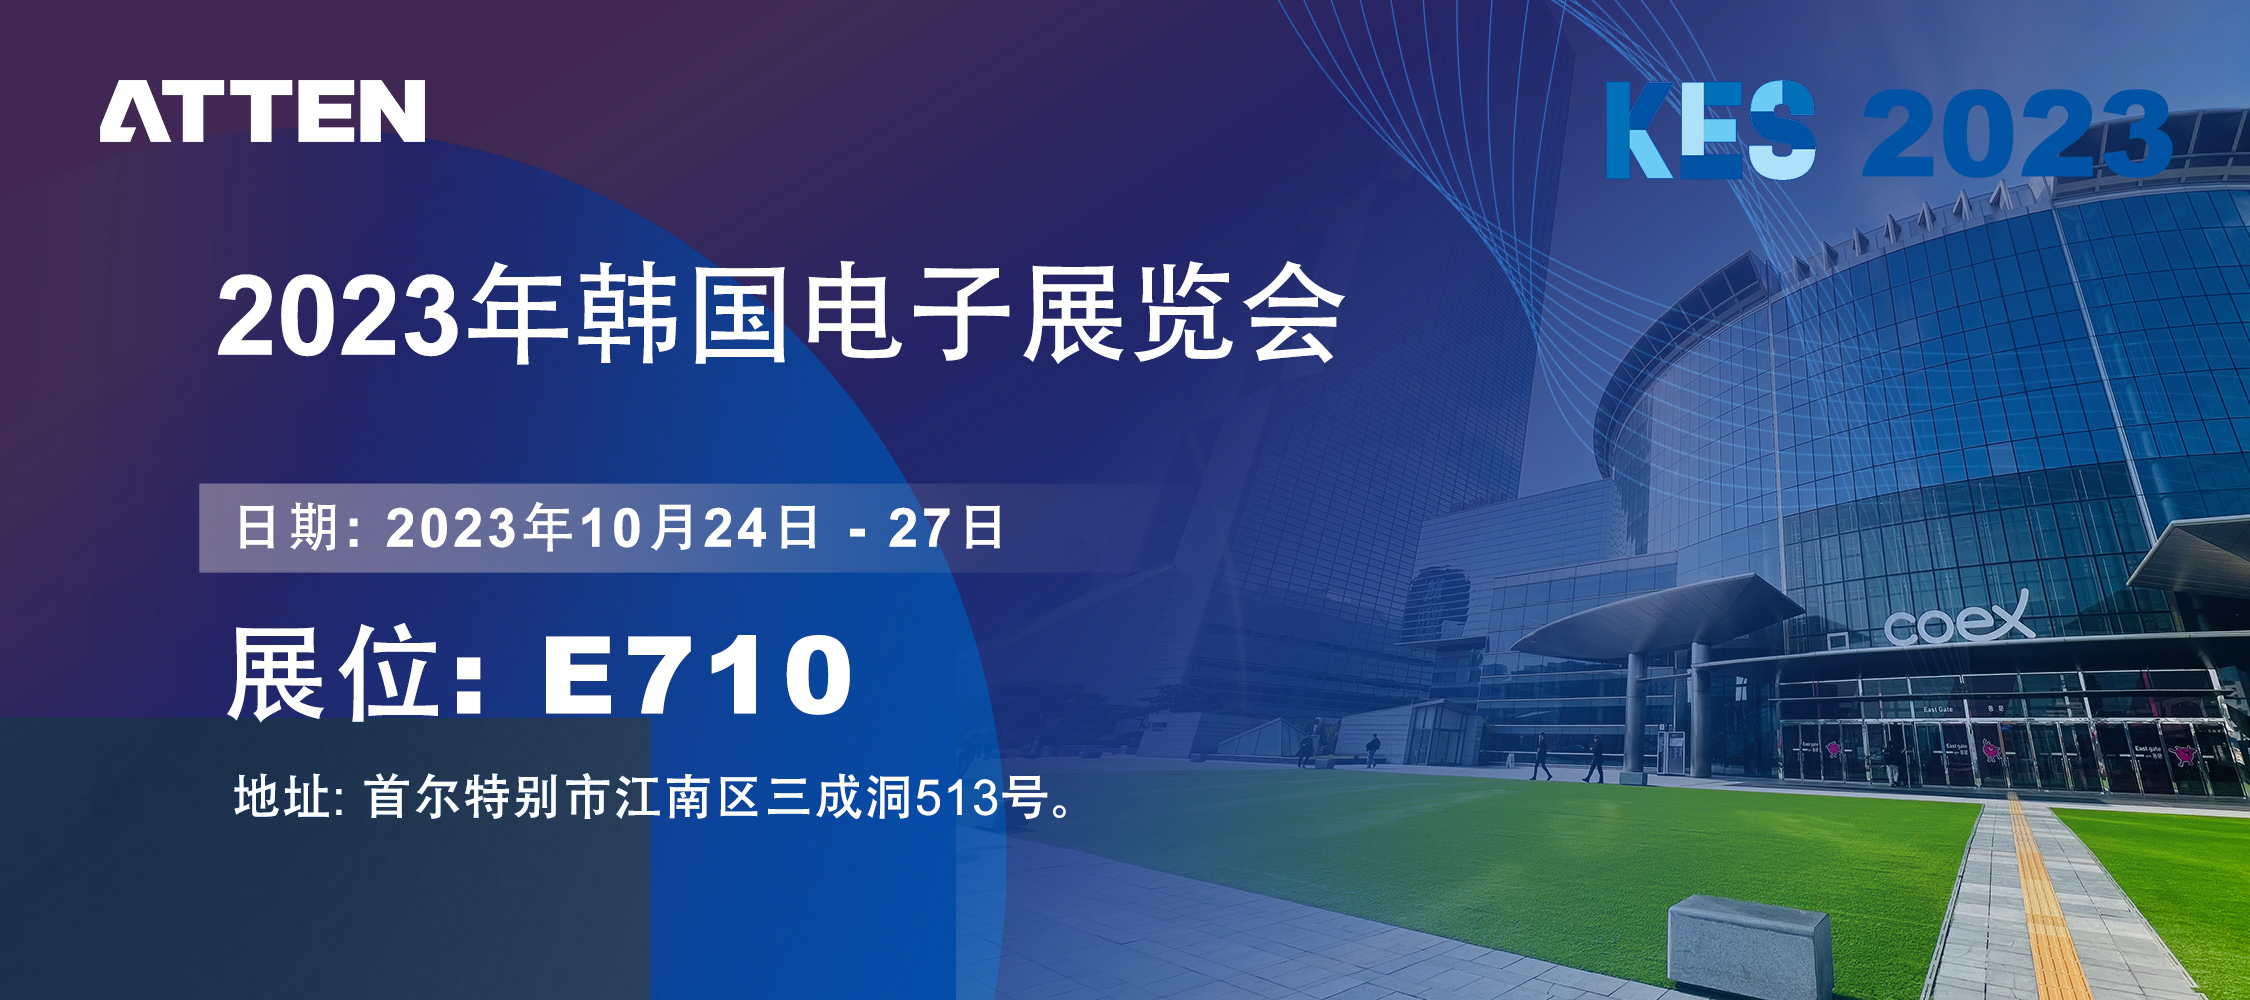 2023年ATTEN韩国电子展览会